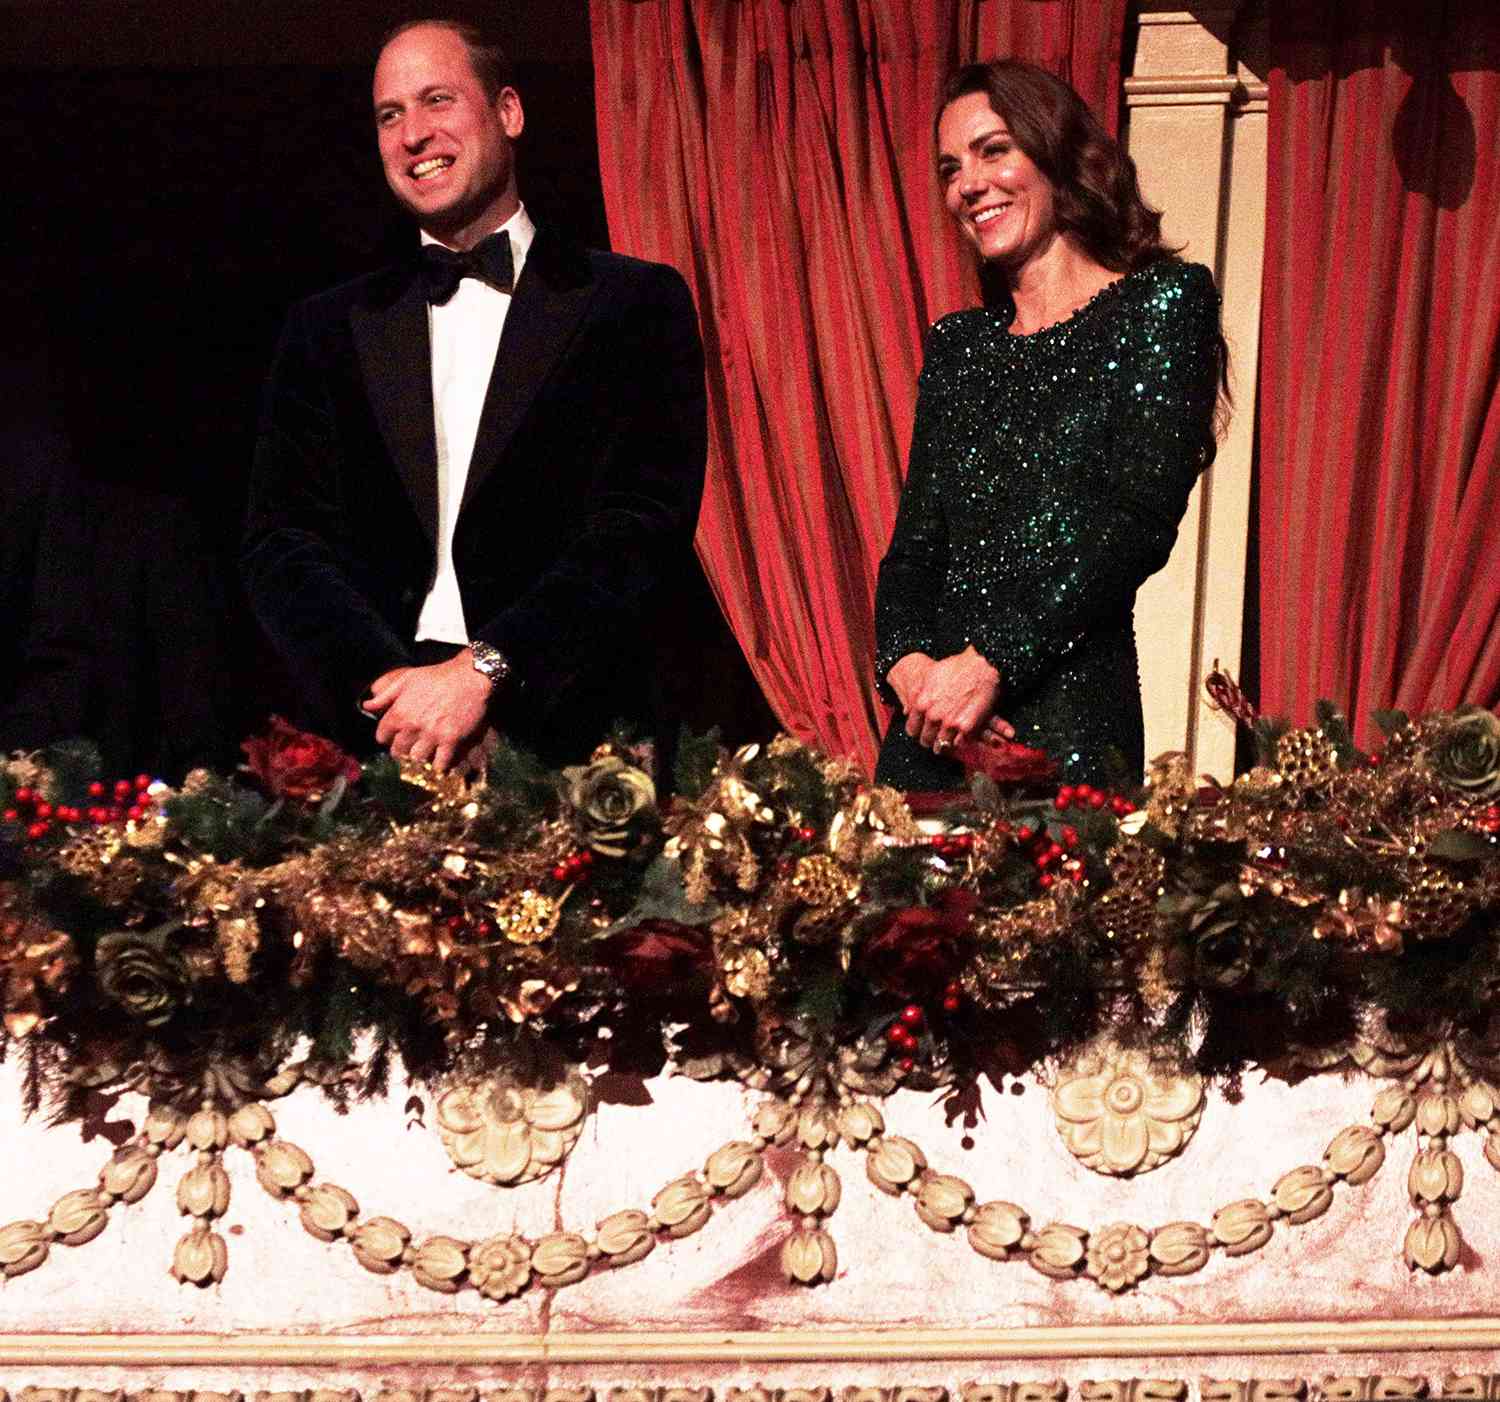 윌리엄 왕자와 케이트 미들턴 일요일 로얄 버라이어티 공연 방영을 앞두고 반짝반짝 빛나고 미소 짓다